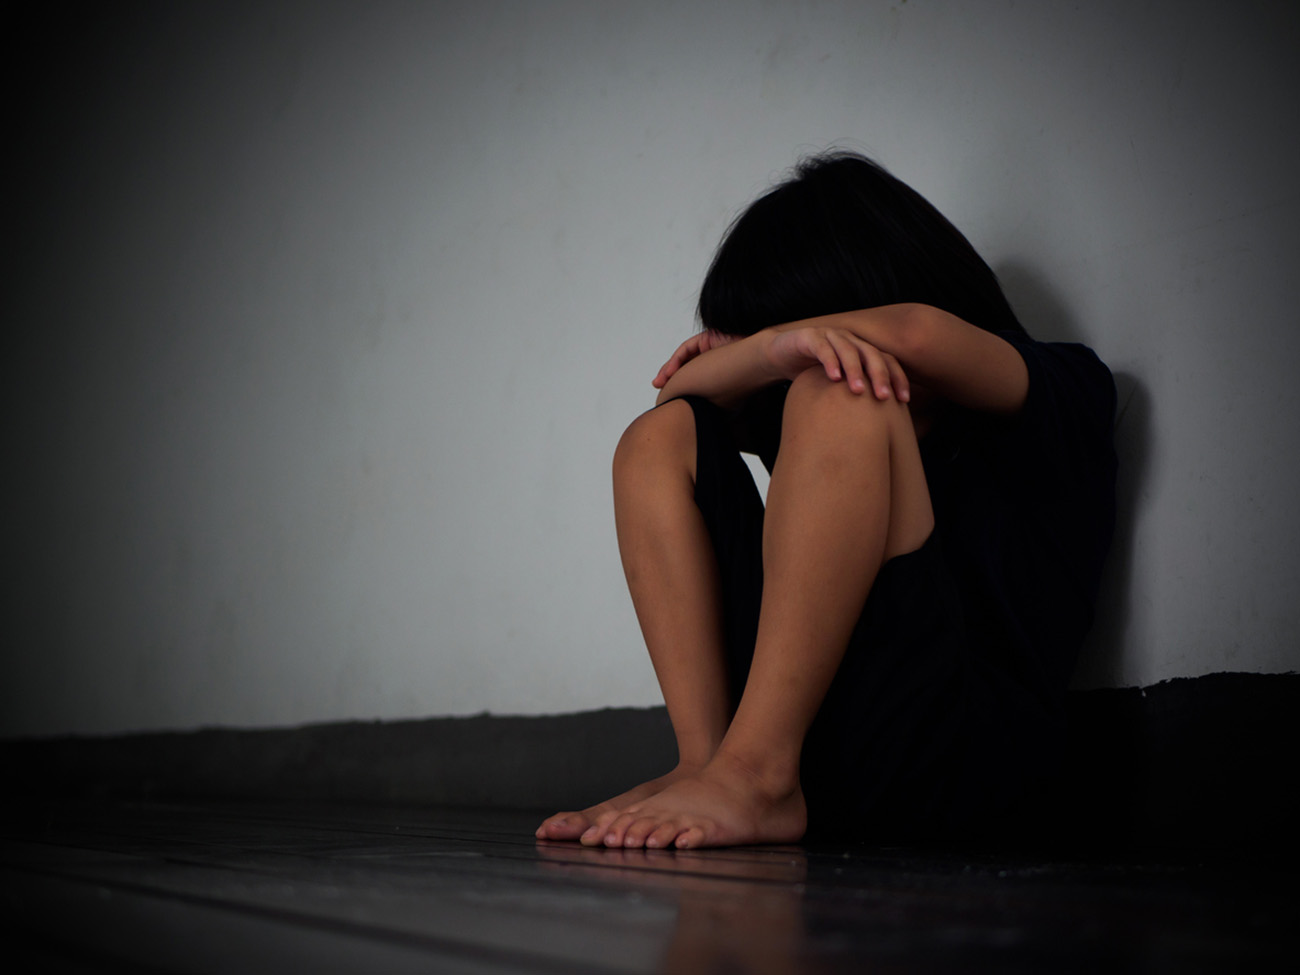 Πετράλωνα: «Τα δυο αδέρφια κατήγγειλαν βιασμούς και άλλων παιδιών και δεν έγινε έρευνα» λέει η δικηγόρος του κοριτσιού